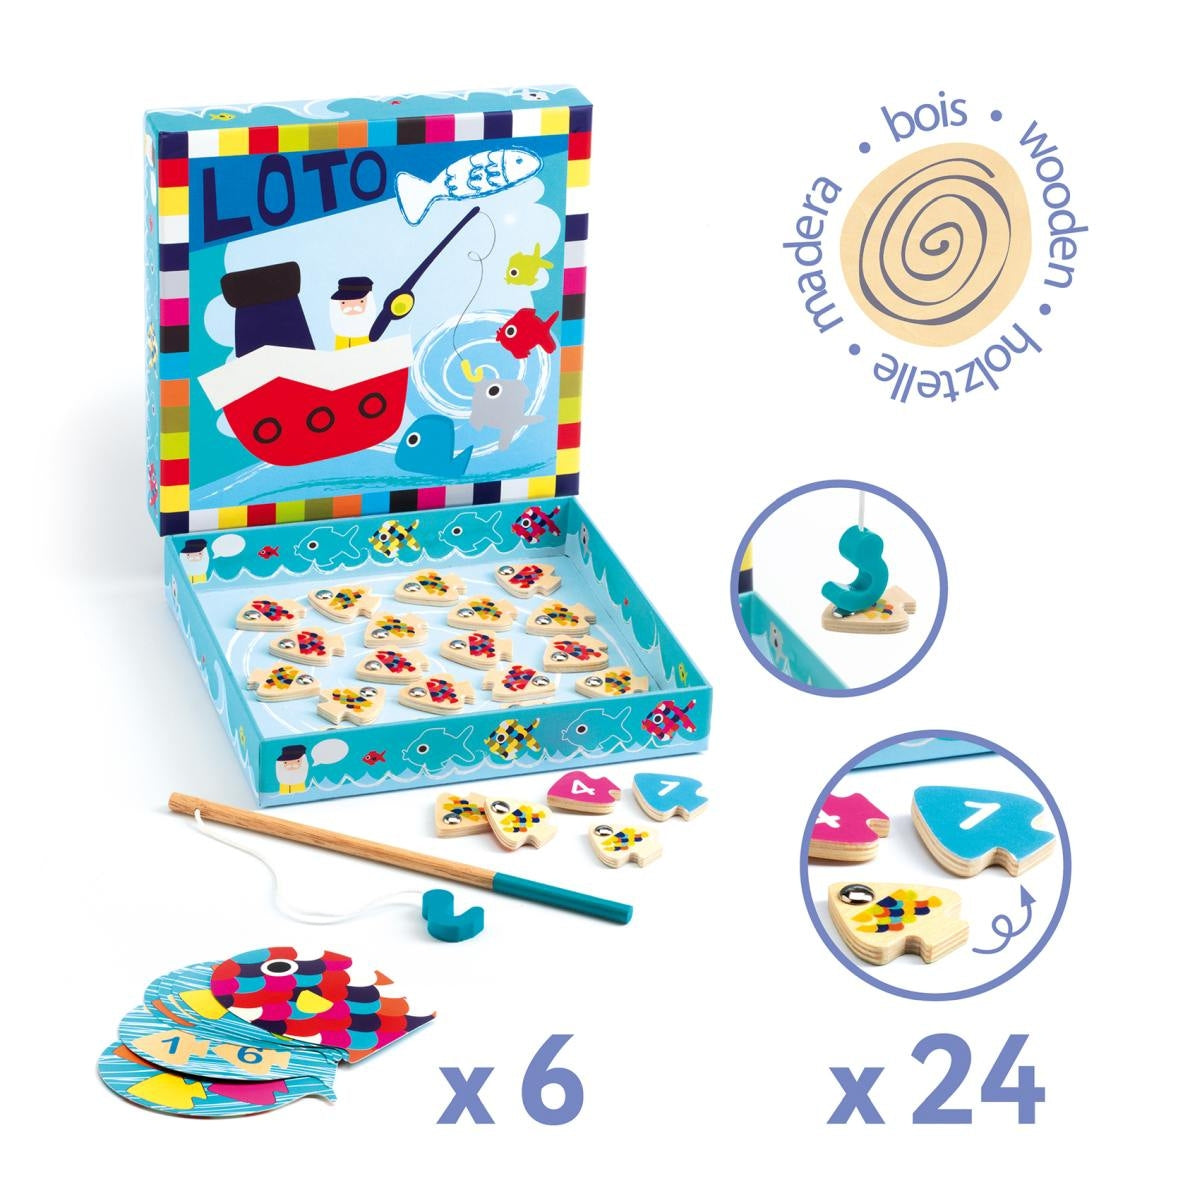 Navy Loto ist ein lustiges Lotto- und Angelspiel in einem! Jeder Spieler legt eine Karte vor sich ab, auf der die kleinen Fische abgebildet sind, die geangelt werden müssen.